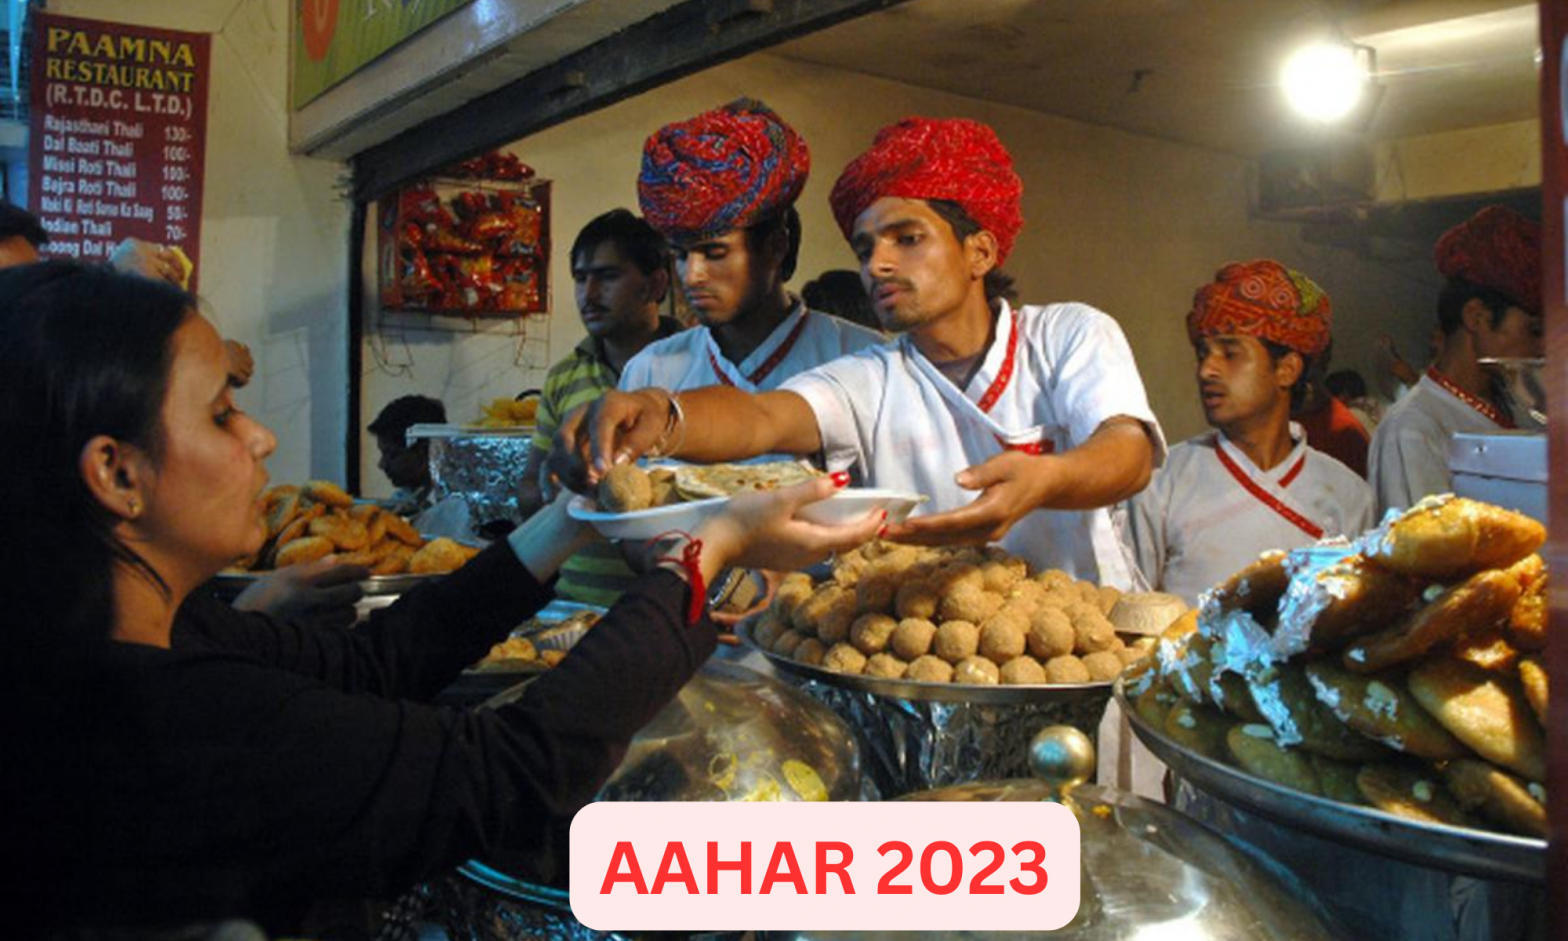 AAHAR 2023